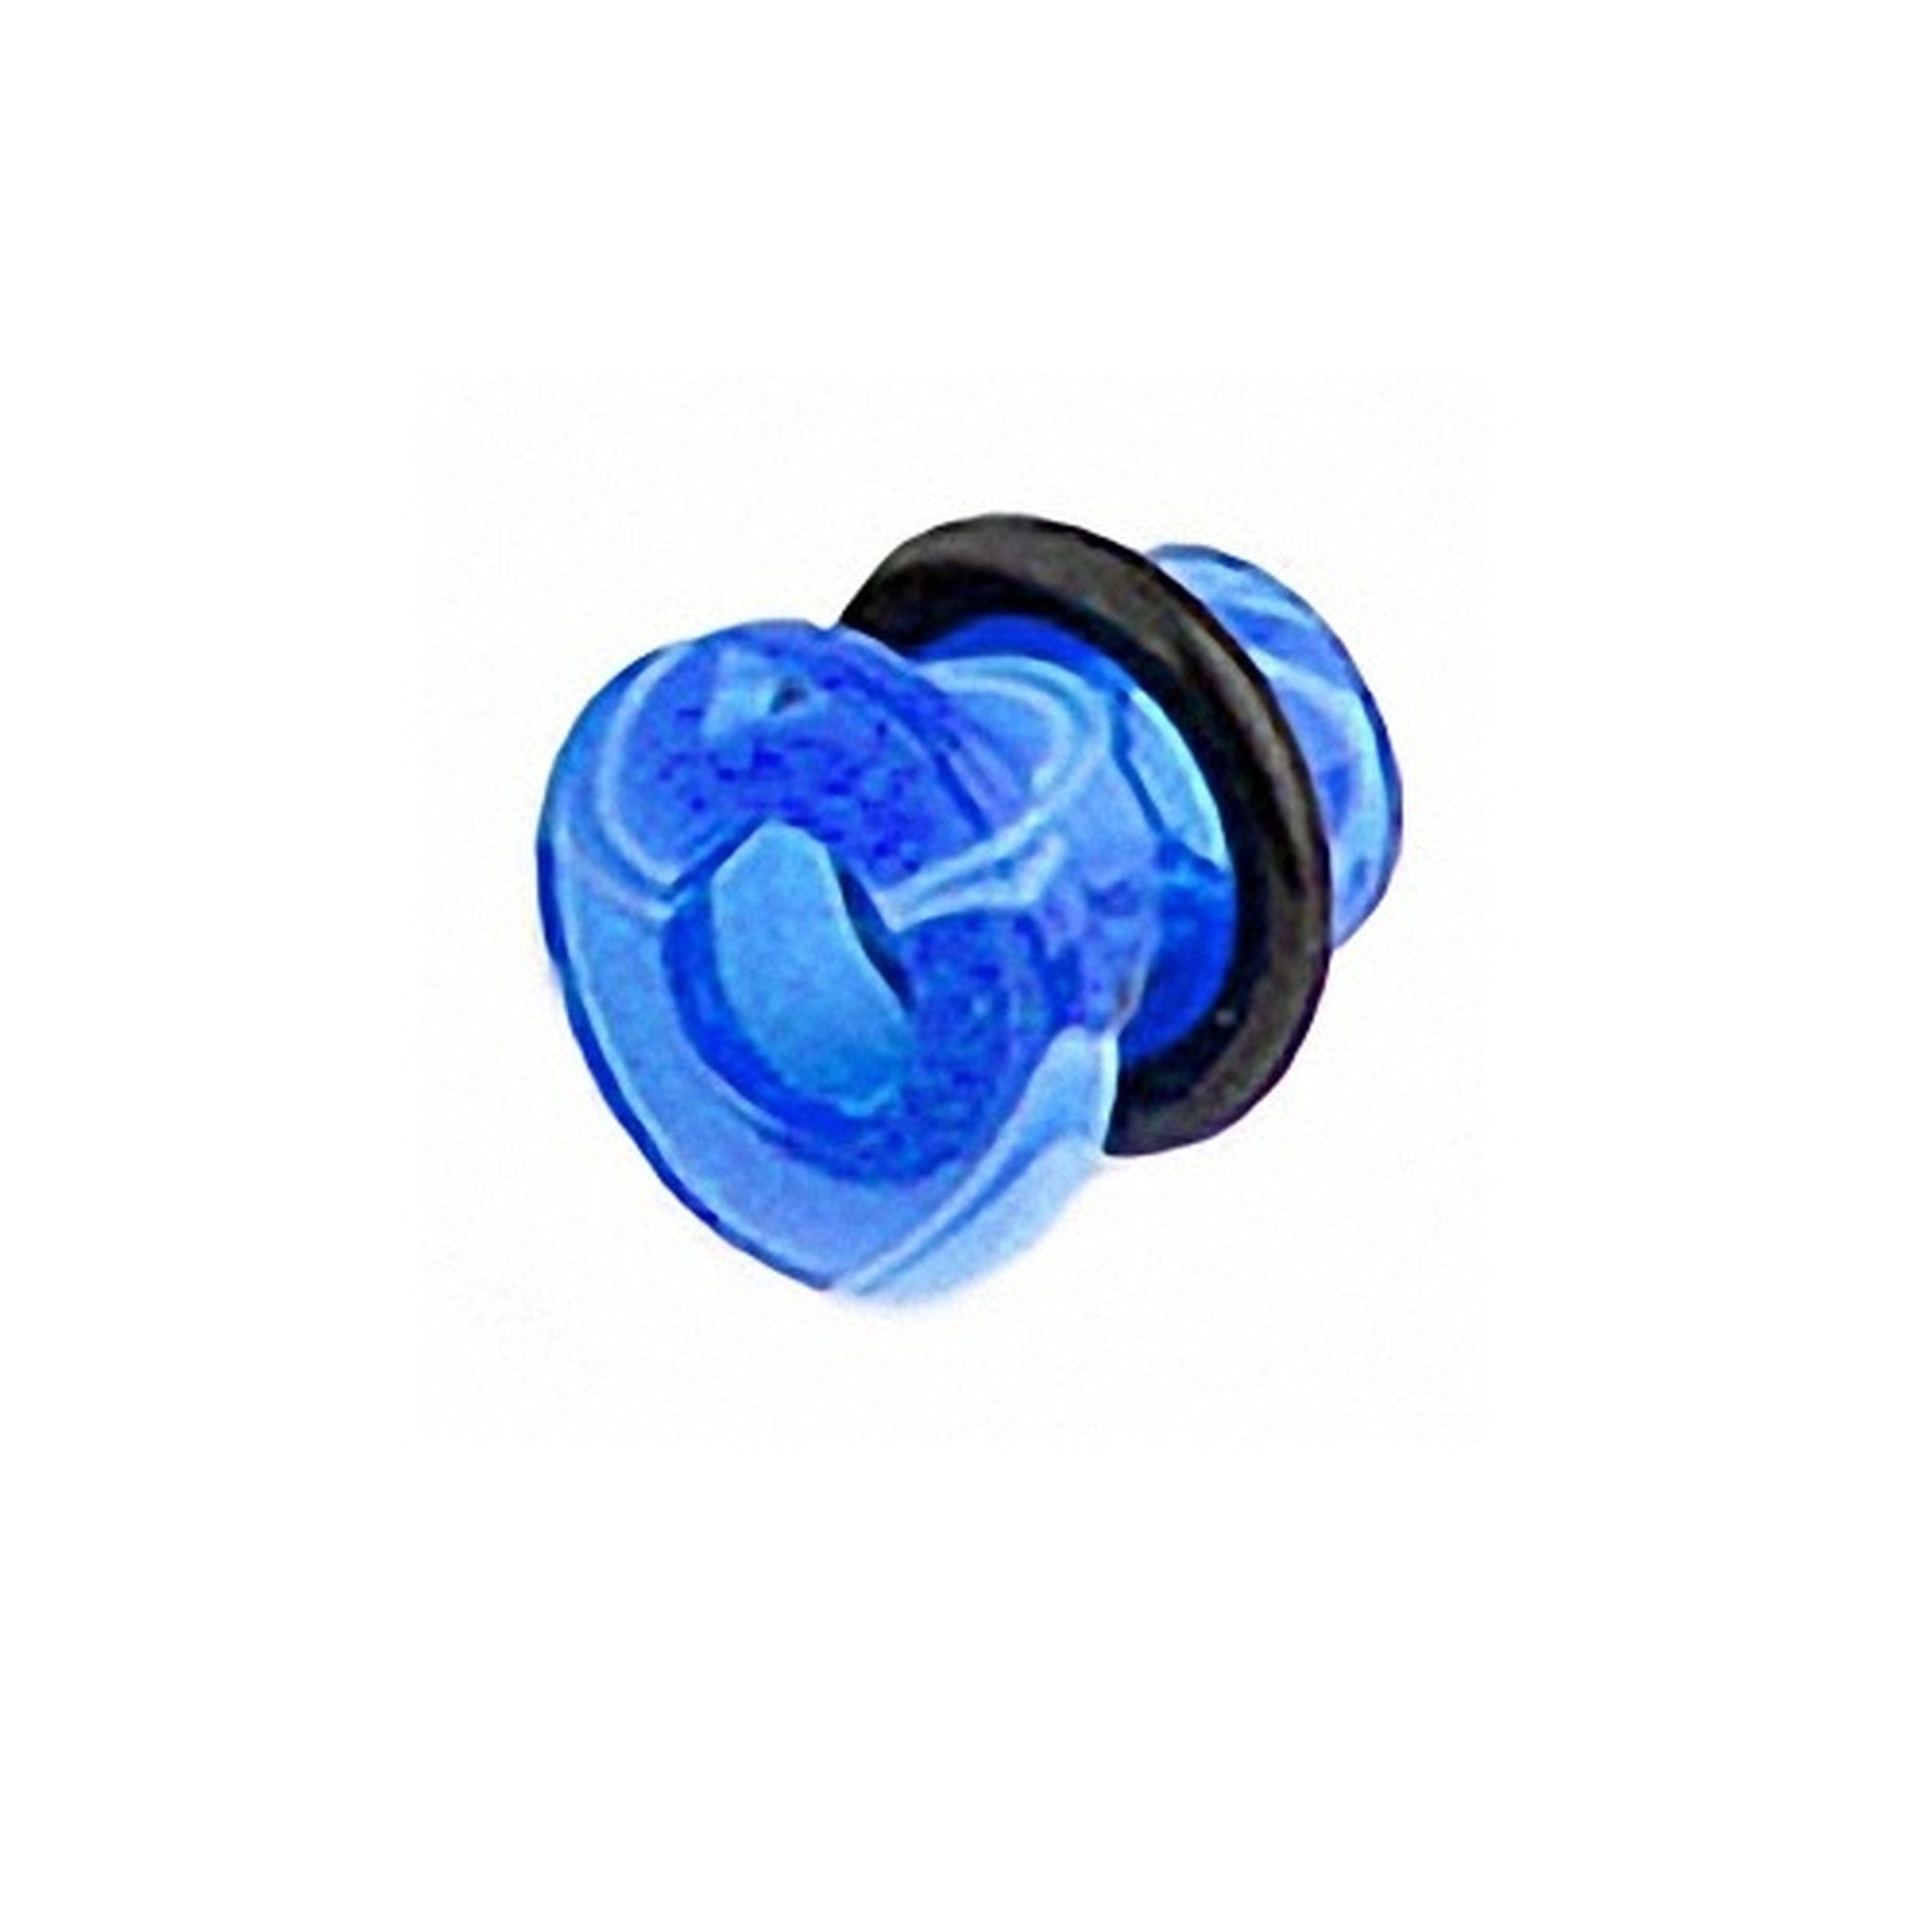 Taffstyle Plug UV Blau Plug Ohr Kunststoff Single Single Swirl Piercing UV Look, Flesh Flared Ear Tunnel Ohrpiercing Flared Marmor